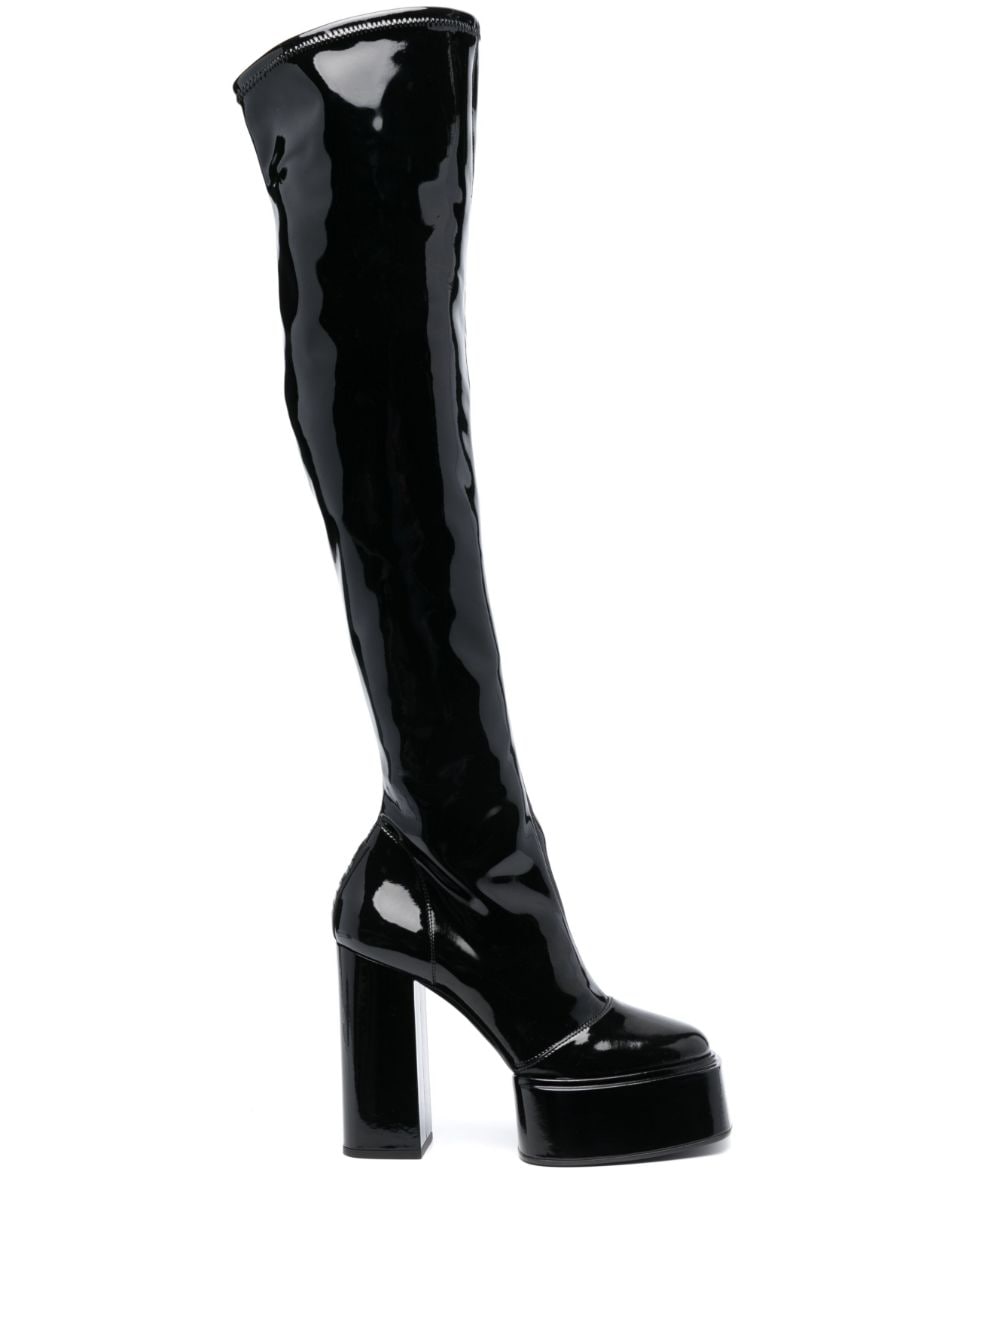 3juin Adele 120mm platform leather boots - Black von 3juin